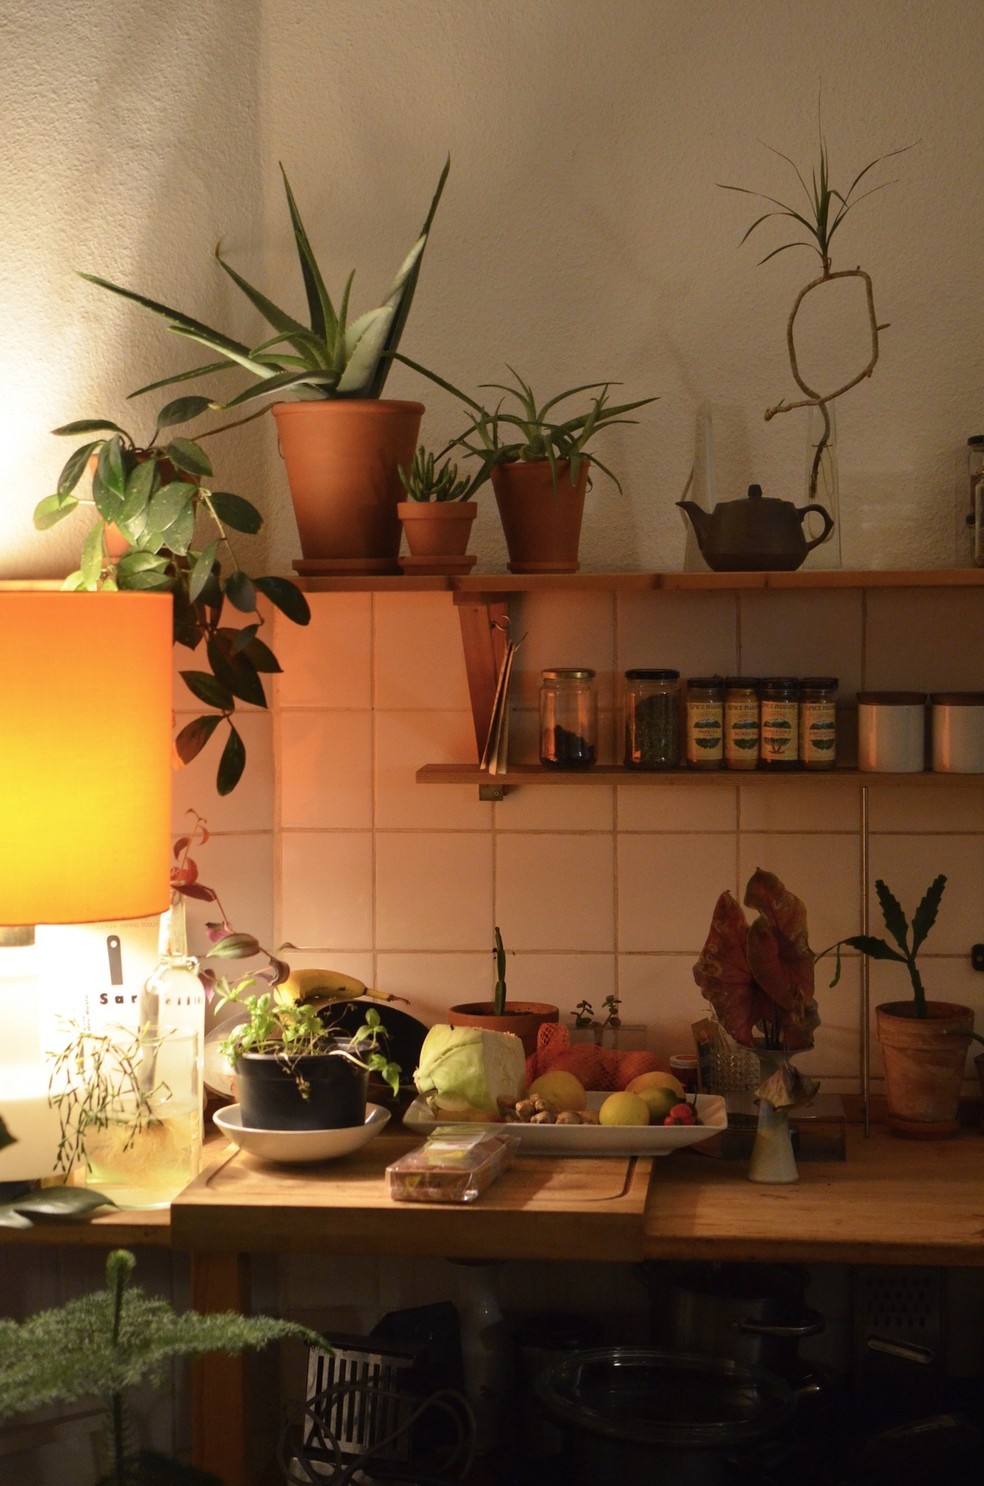 Plantas na cozinha podem ficar entre o fogão e a pia para trazer equilíbrio — Foto: Pexels / Skylar Kang / CreativeCommons